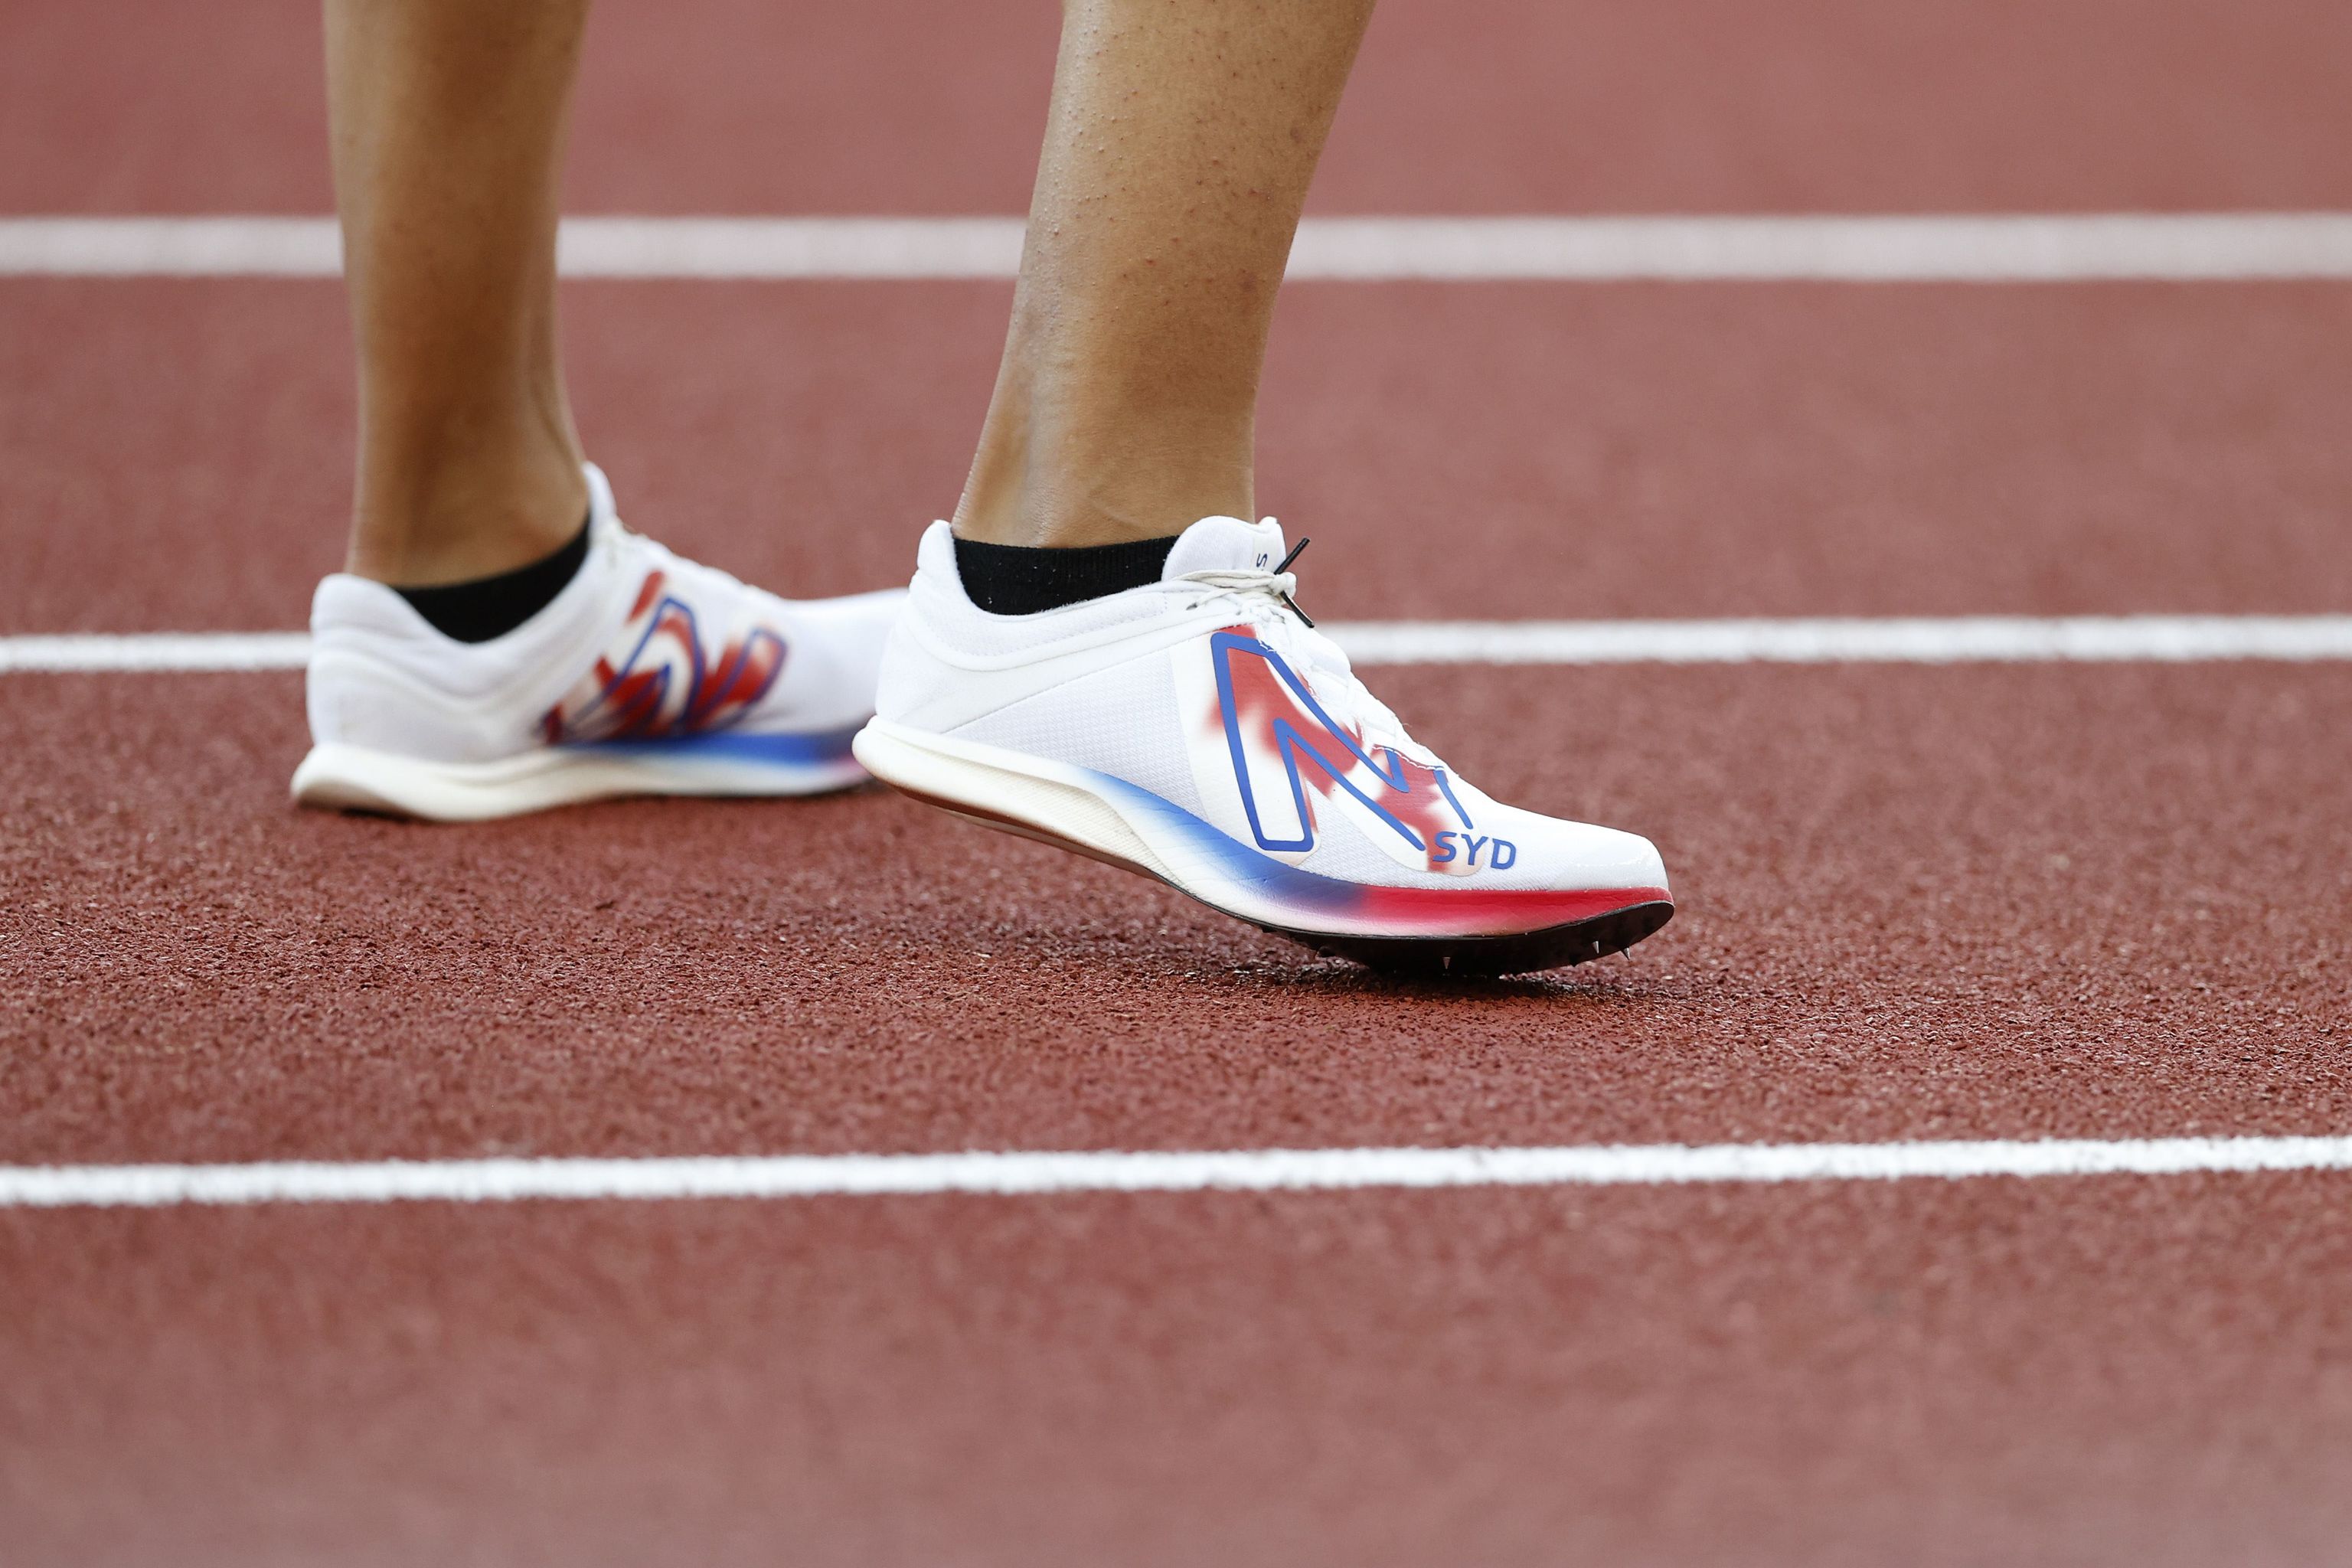 Las zapatillas voladoras: récords y una normativa polémica | Más deporte